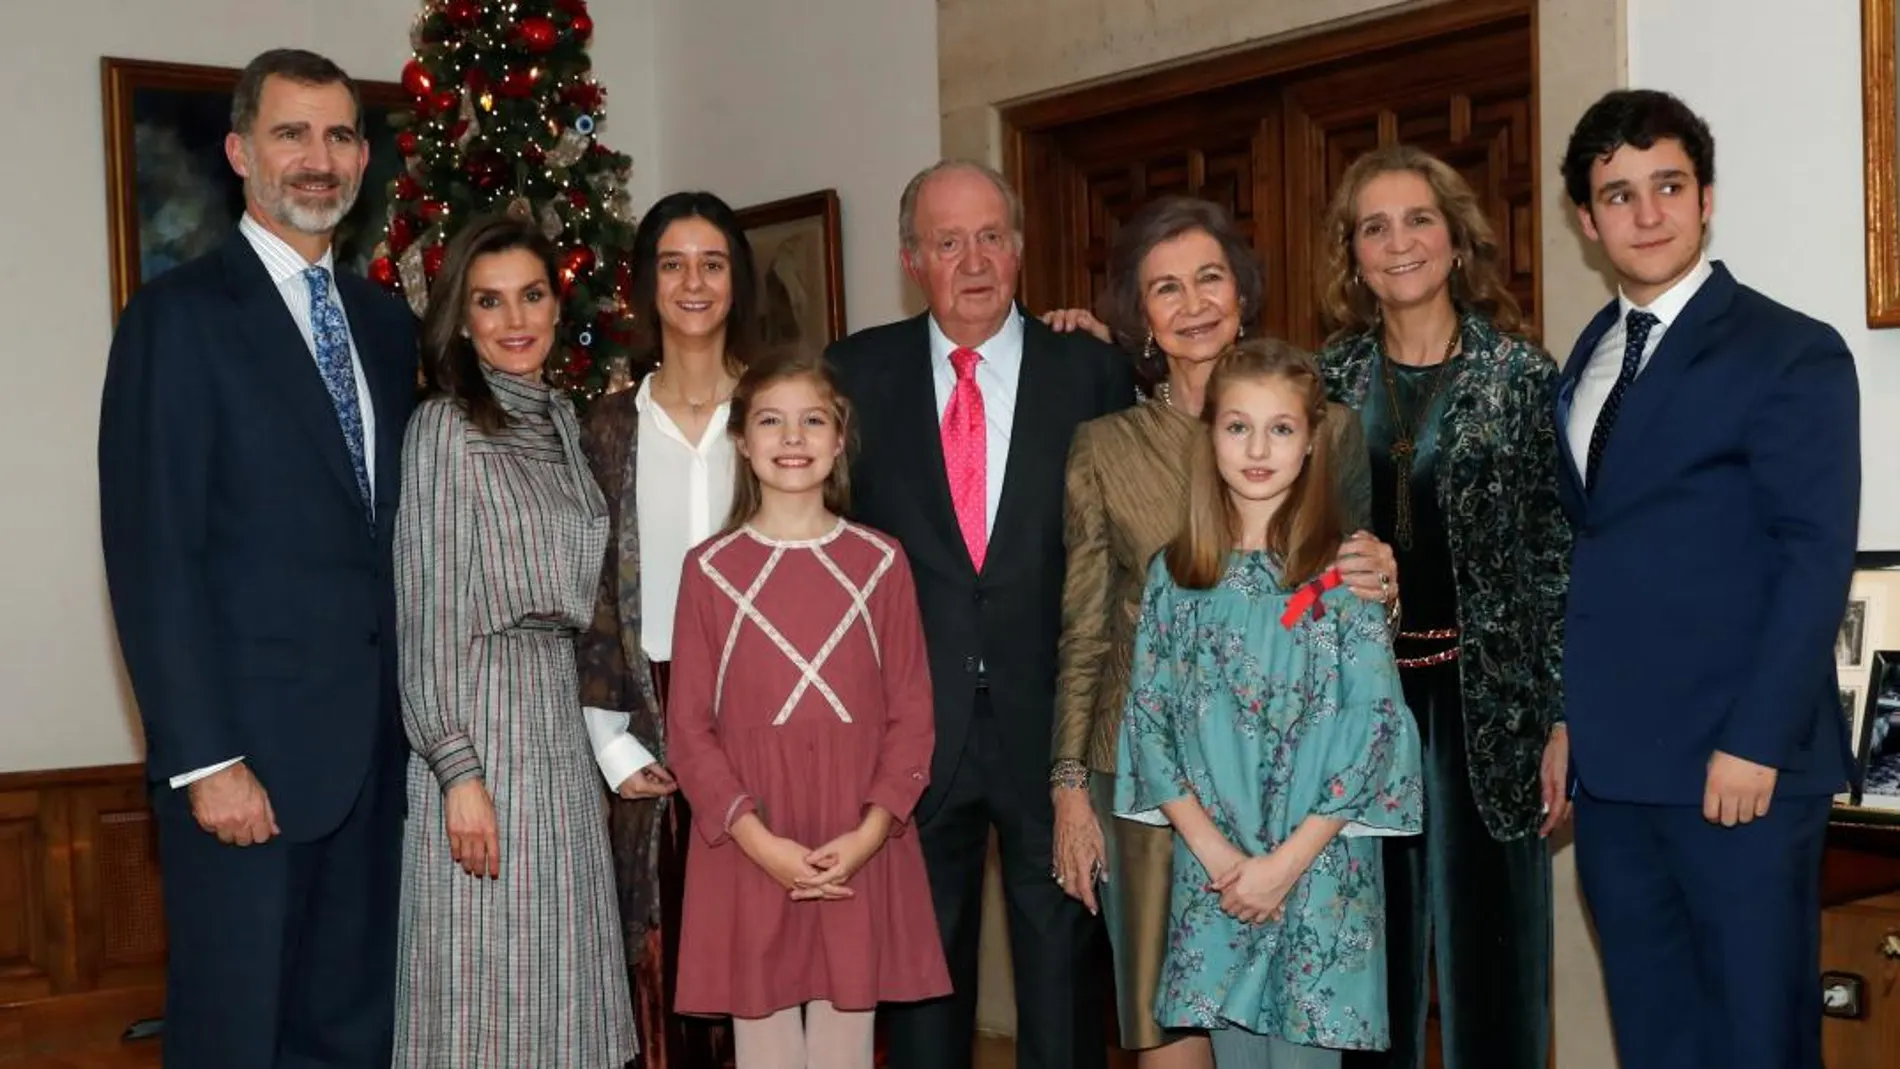 La reunión familiar se ha celebrado en el Palacio de la Zarzuela